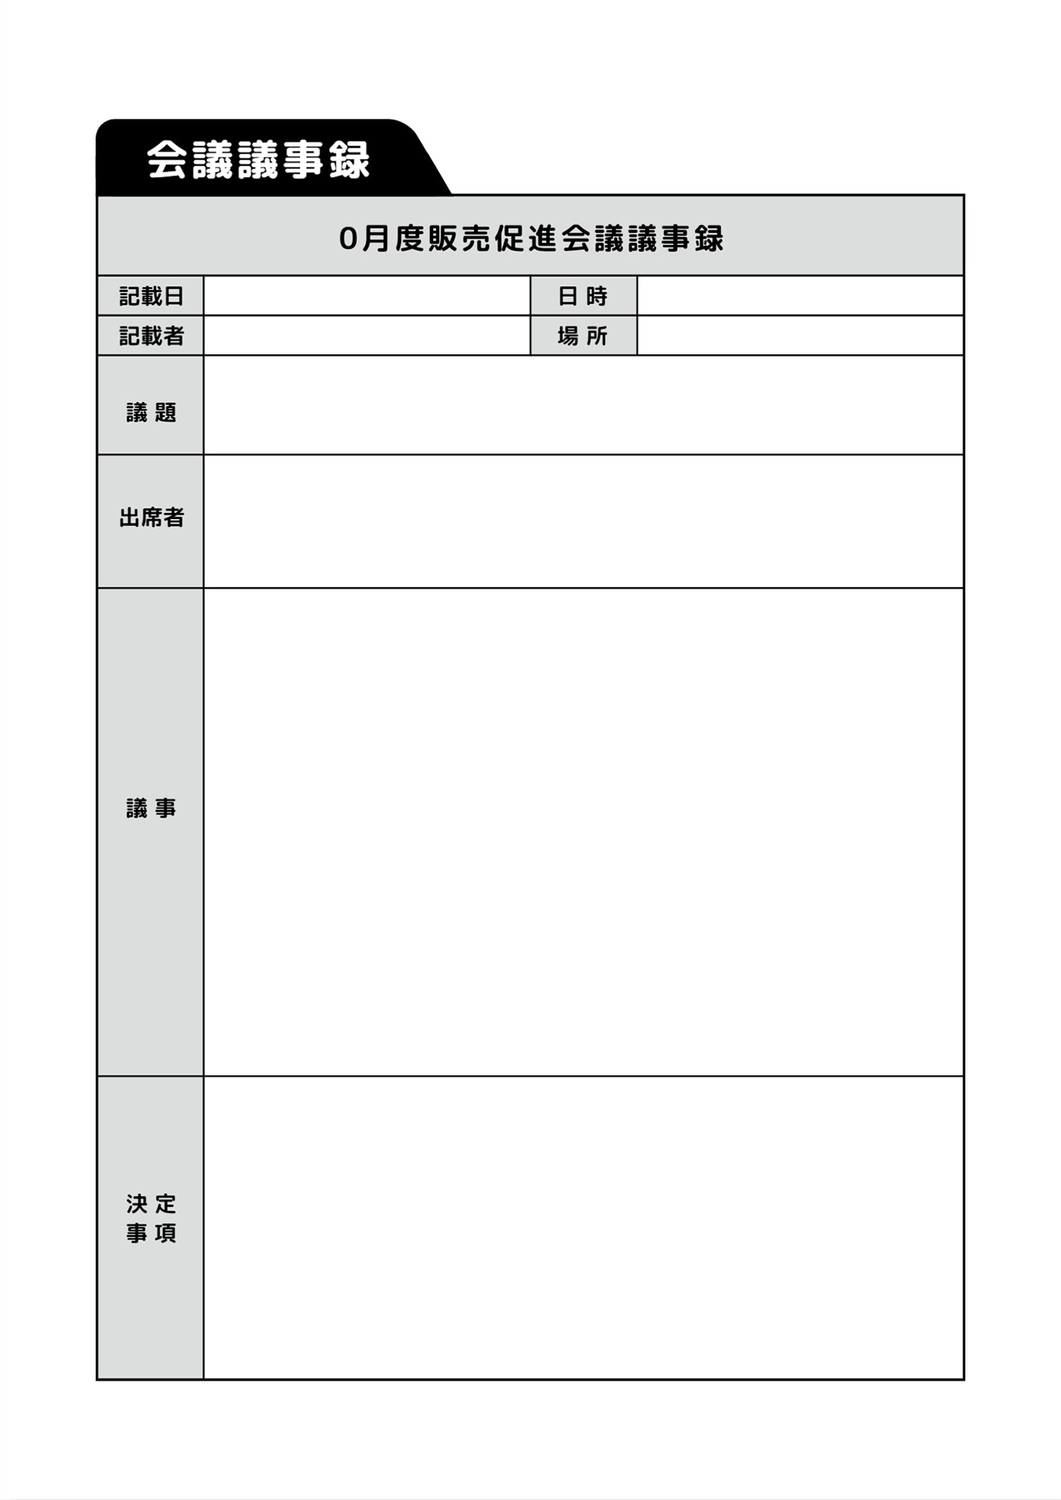 会議議事録テンプレート, vertical, document, A4 document, A4 template